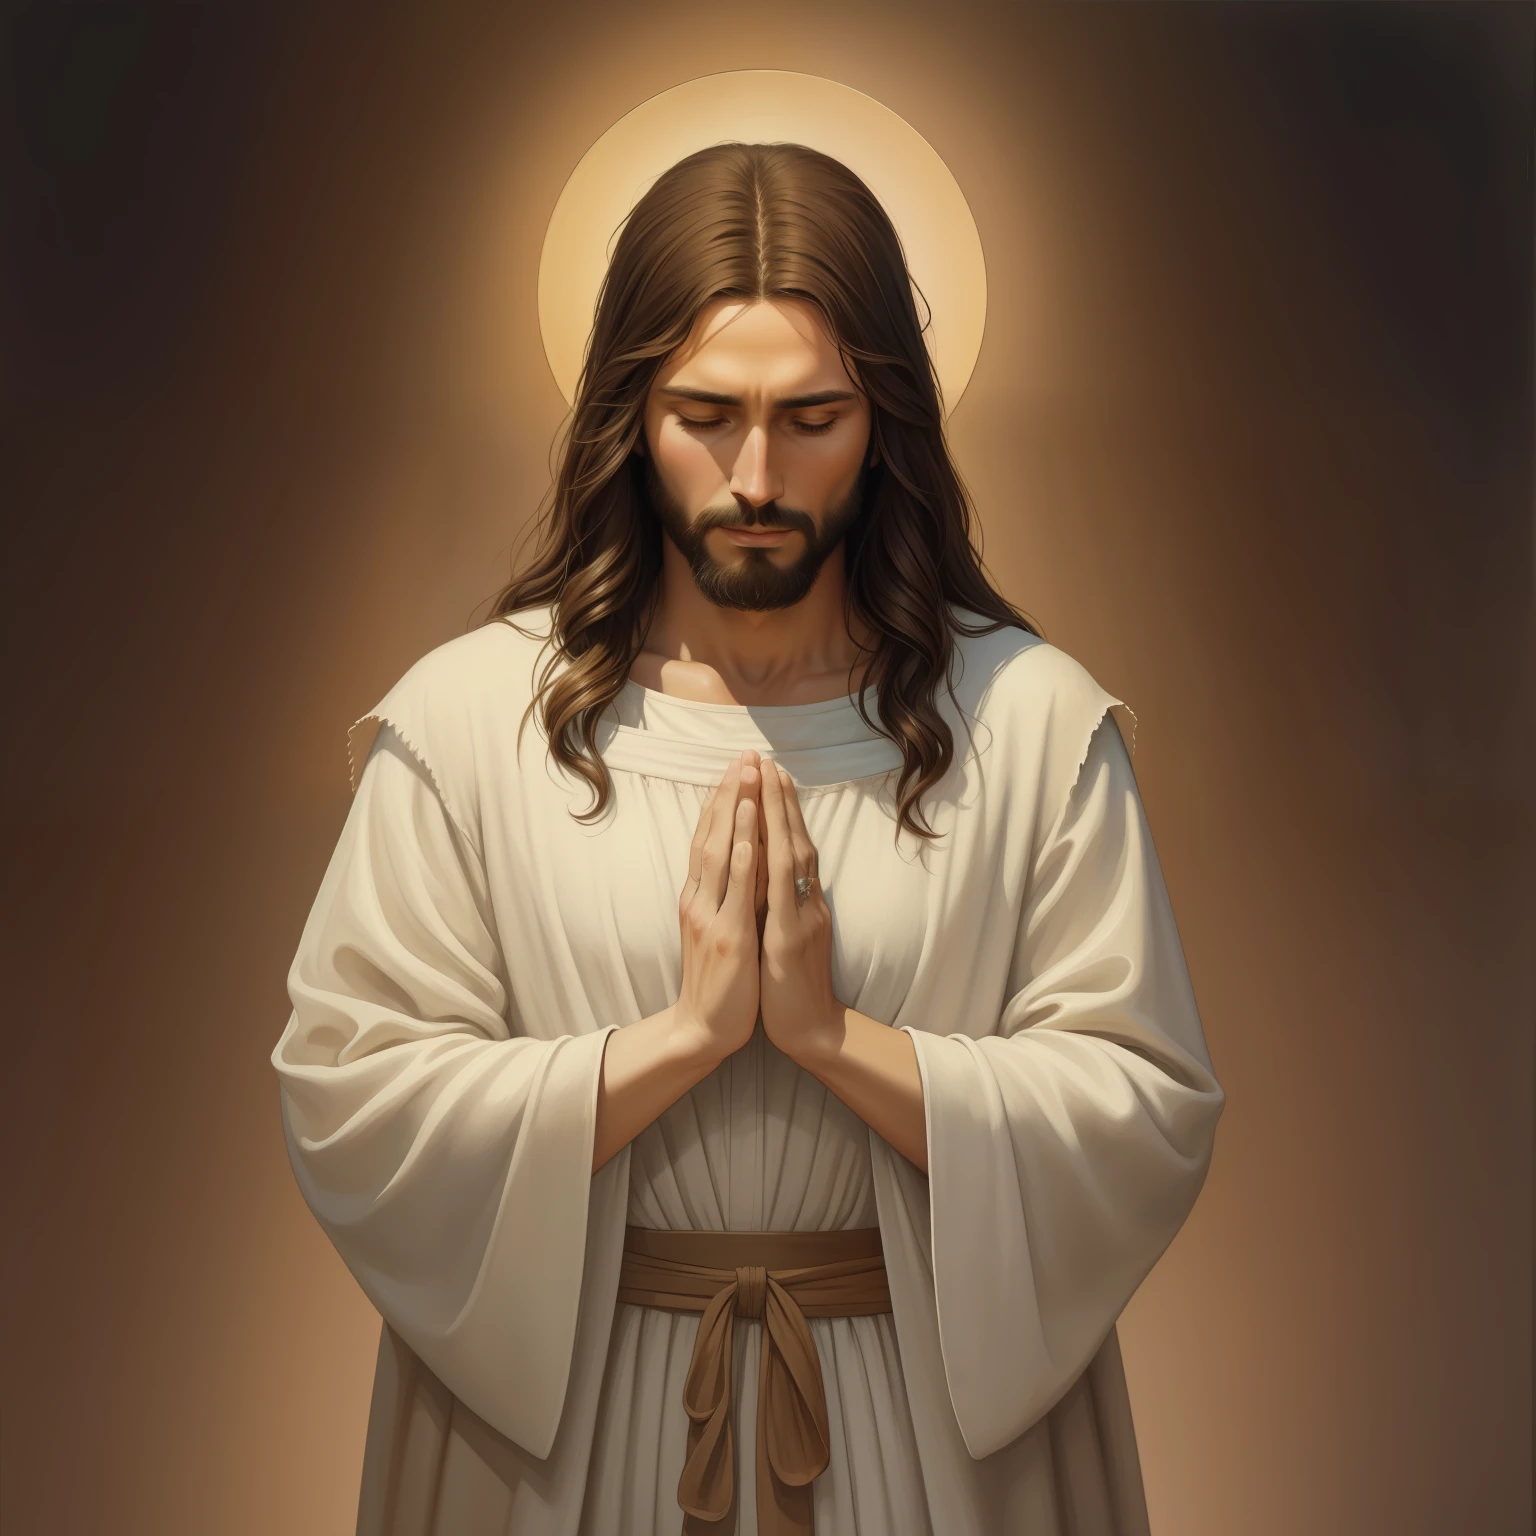 (ภาพถ่ายภาพยนตร์ของพระเยซู) A beautiful ultra-thin เหมือนจริง portrait of Jesus, ผู้เผยพระวจนะ, ผู้ชายอายุ 33 ปี ภาษาฮีบรูสีน้ำตาล, ผมสั้นสีน้ำตาล, หนวดเครายาวสีน้ำตาล, สวมเสื้อลินินตัวยาวปิดบริเวณหน้าอก, ในมุมมองด้านหน้า, เต็มตัว, ตามพระคัมภีร์, เหมือนจริง,โดย ดิเอโก้ เบลัซเกซ,ปีเตอร์ พอล รูเบนส์,แรมแบรนดท์,อเล็กซ์ รอสส์,8k, แนวคิดศิลปะ, Photoเหมือนจริง, เหมือนจริง,  ภาพประกอบ, ภาพวาดสีน้ำมัน, สถิตยศาสตร์, Hyperเหมือนจริง, อธิษฐาน , ศิลปะดิจิทัล, สไตล์, สีน้ำ, พื้นหลังตามธรรมชาติ, อธิษฐาน ( ผู้หญิงอวยพร)